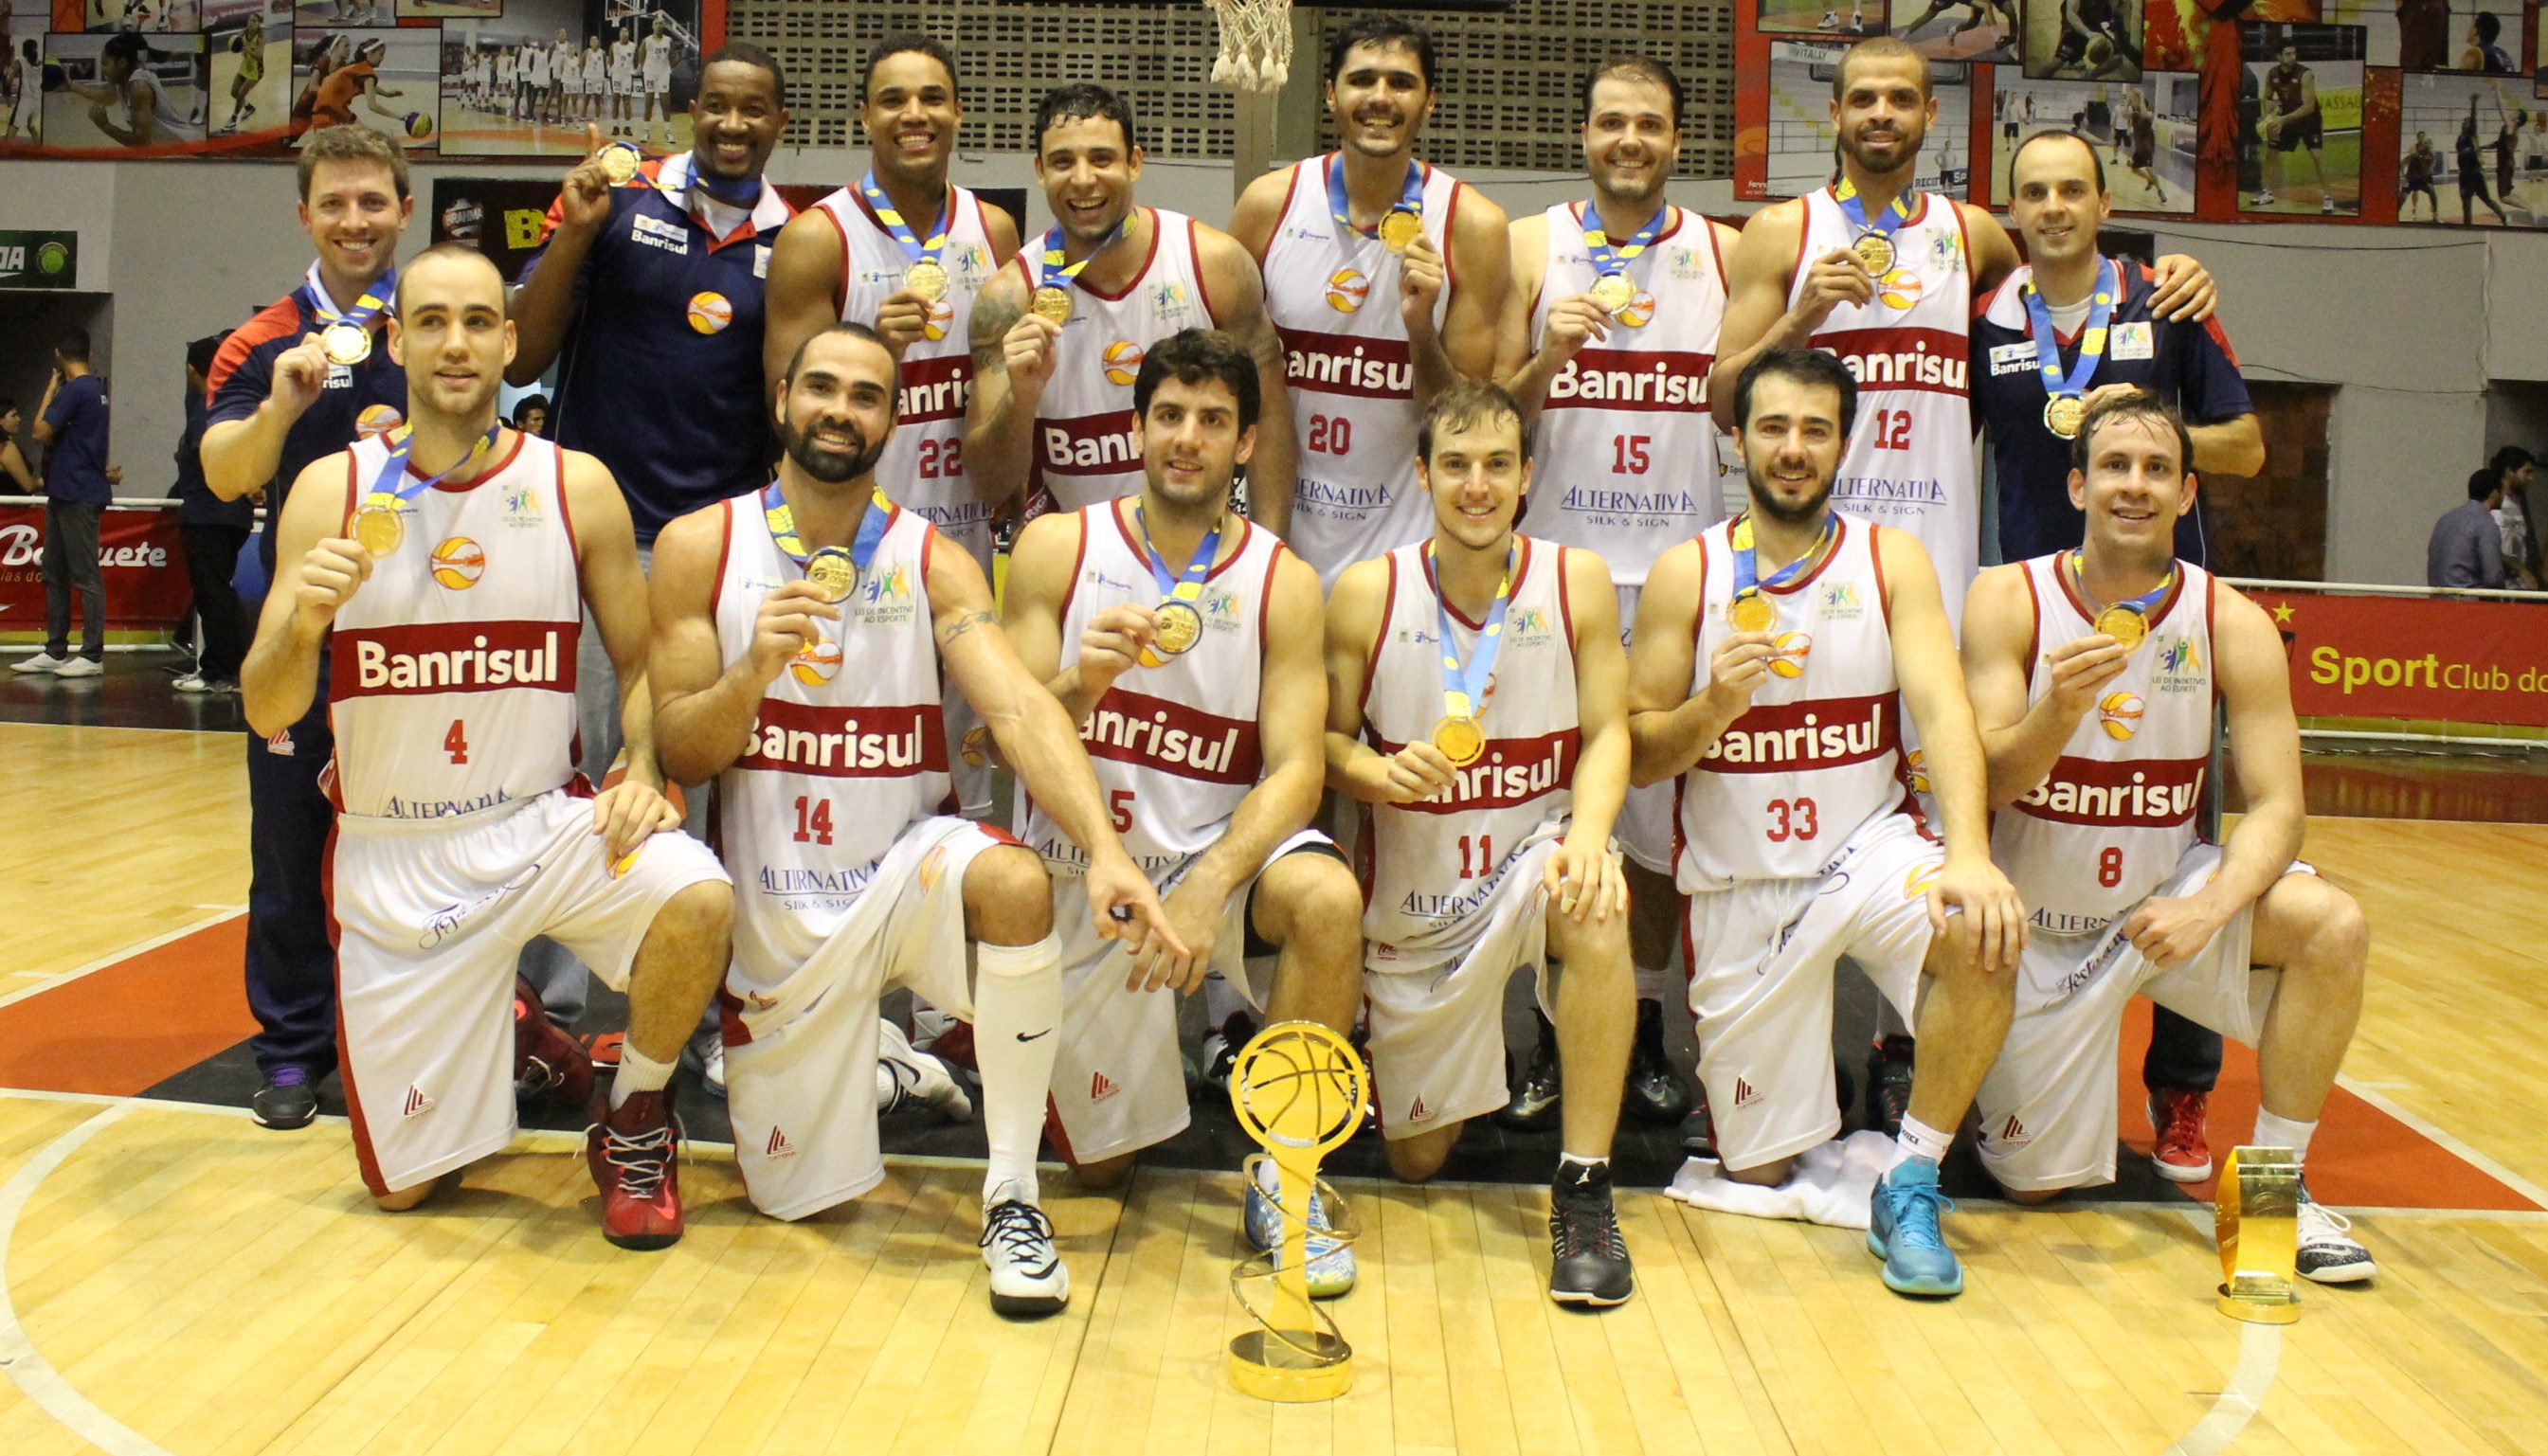 Campeão em 2015, Caxias garantiu acesso ao NBB e agora represente a Região Sul na elite do basquete nacional (Guilherme Peixinho/LNB)